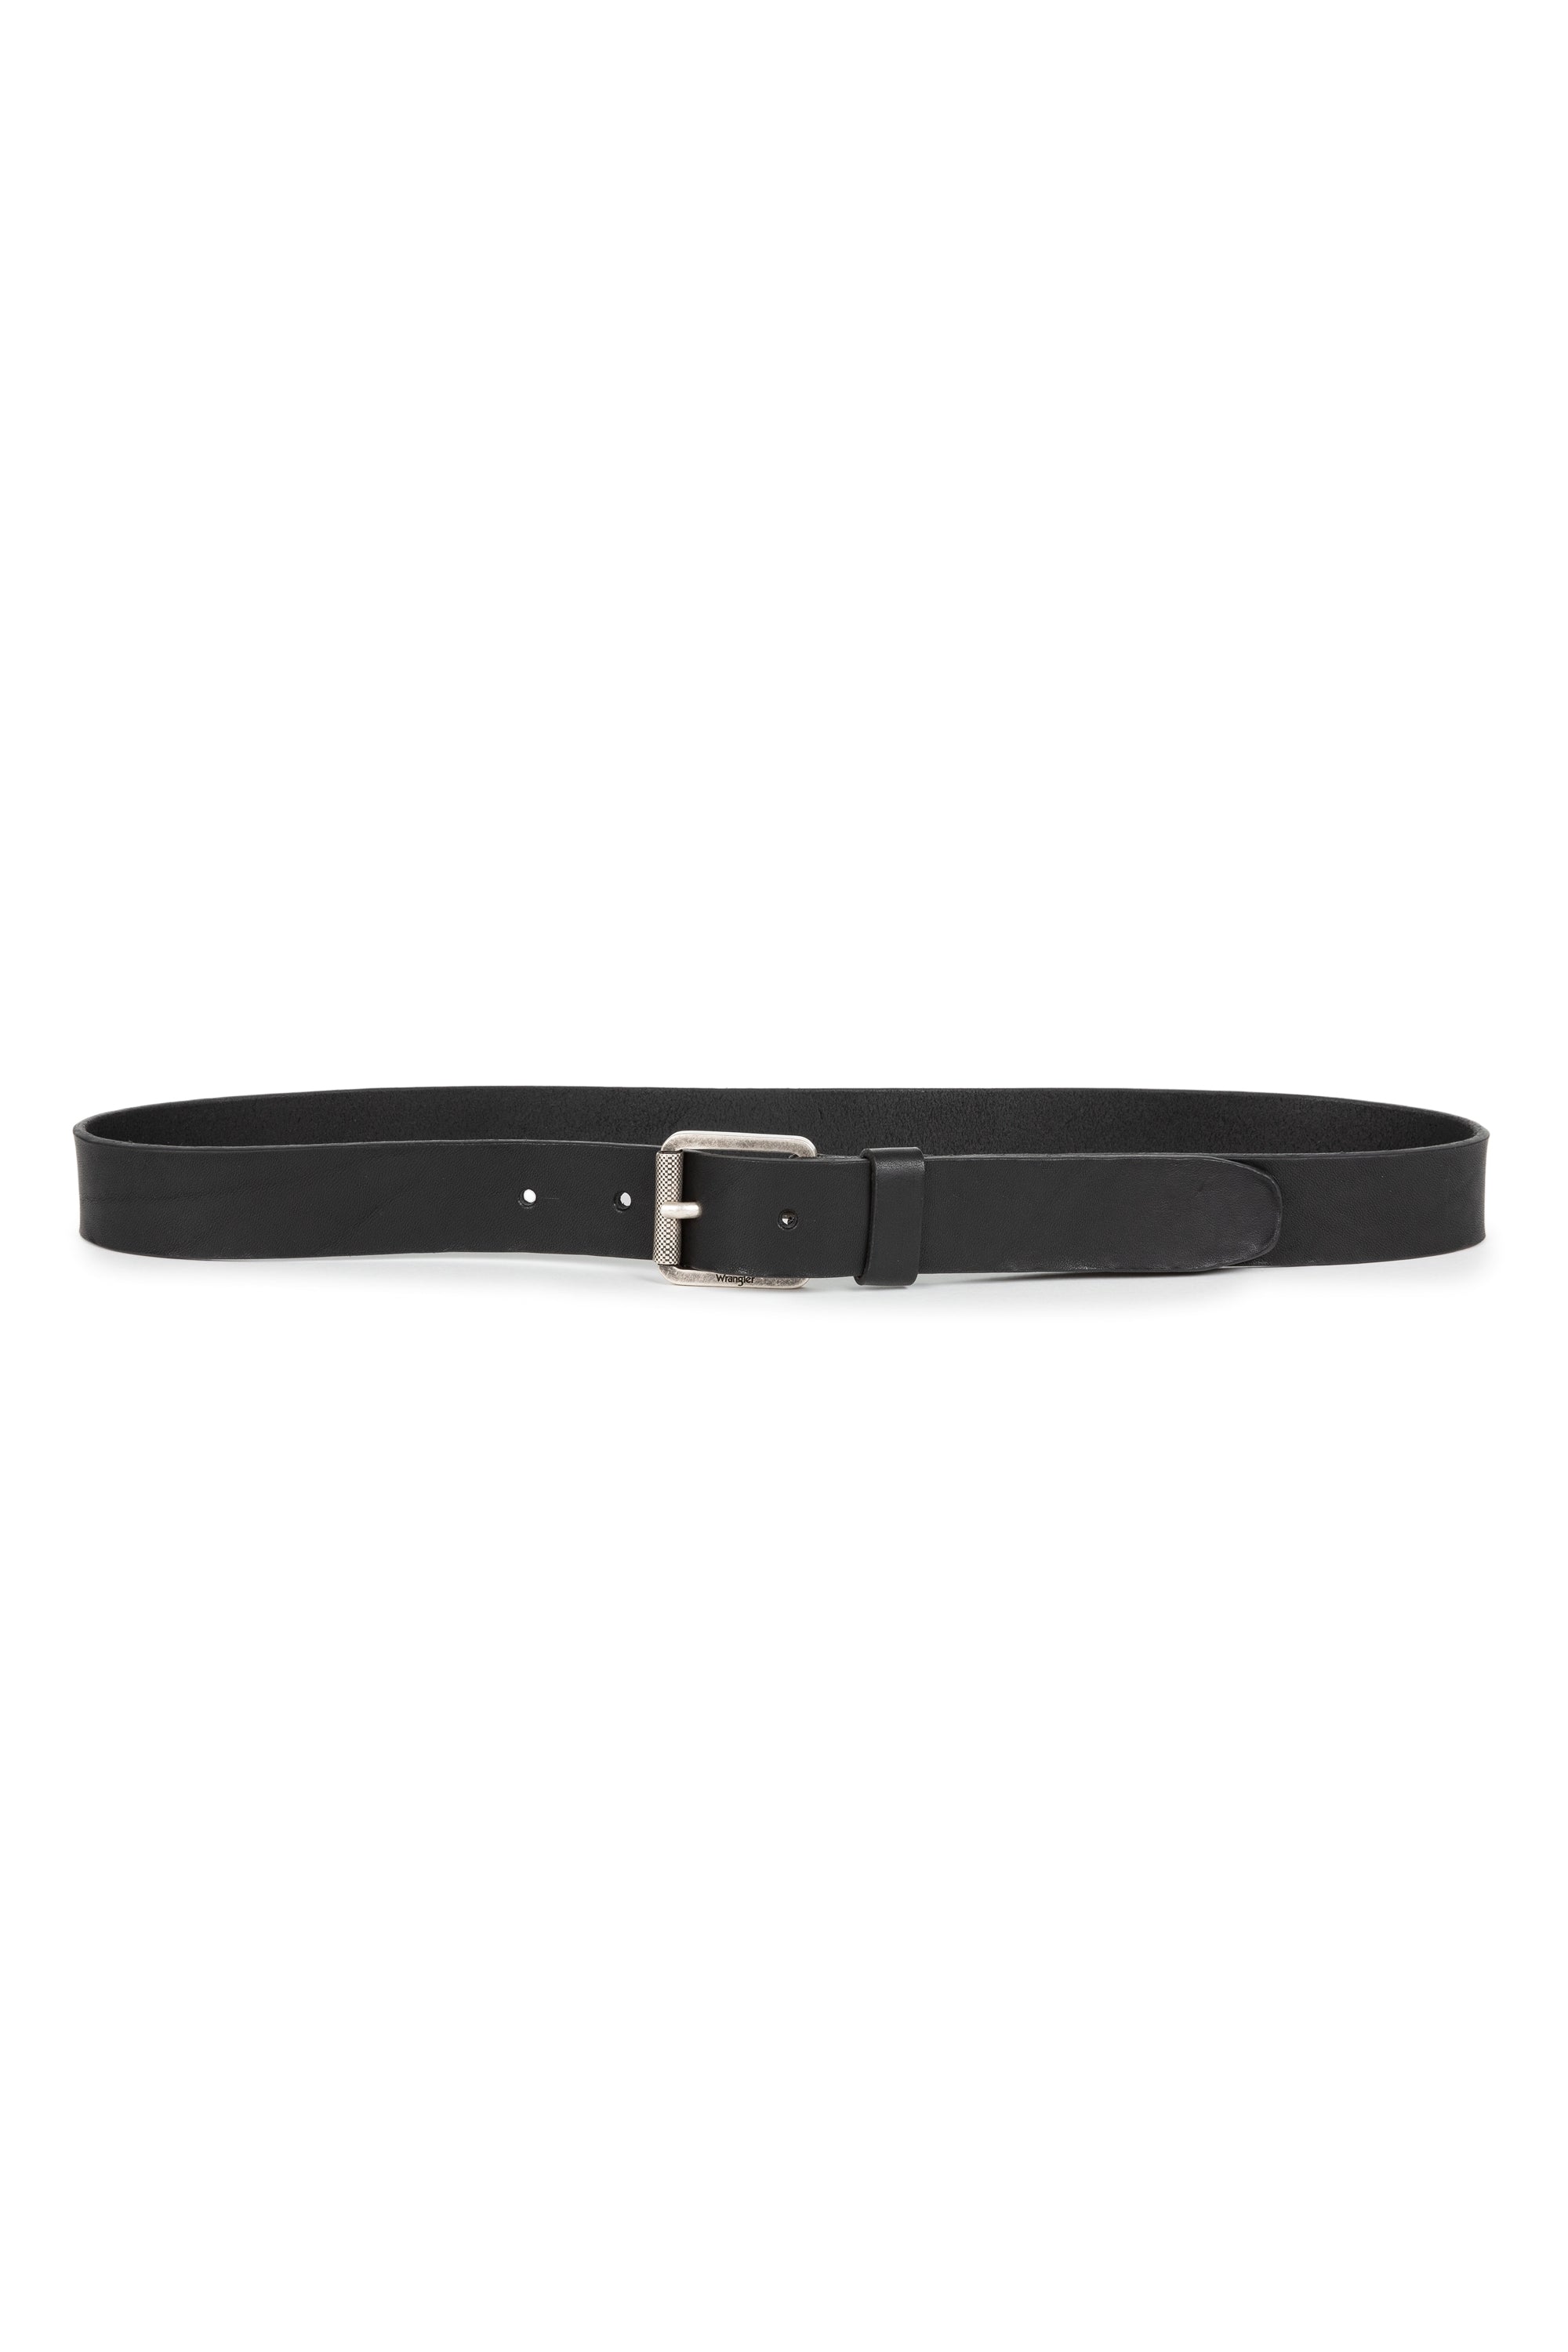 Leather Belt in Black Gürtel Wrangler   